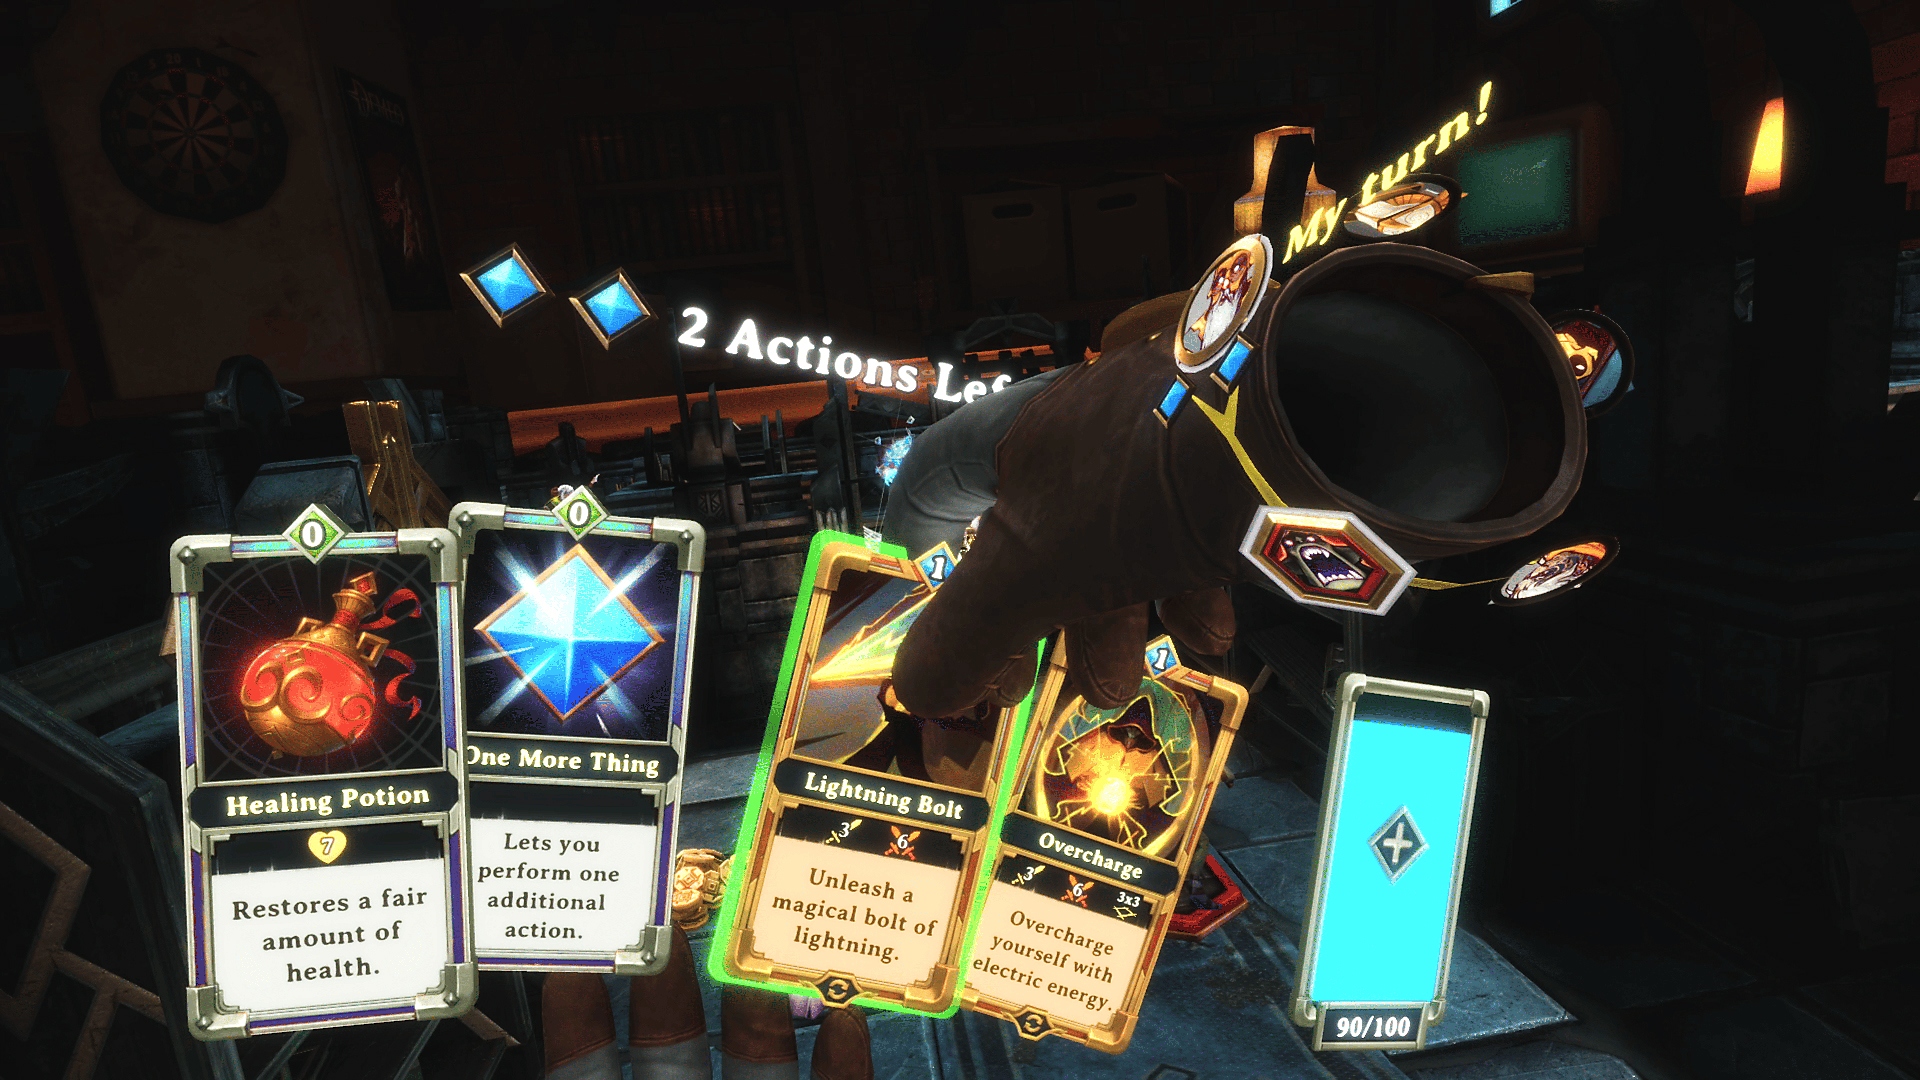 لقطة شاشة للعبة Demeo تعرض يدًا مرتفعة تختار بطاقة للعب 'Lightning Bolt'